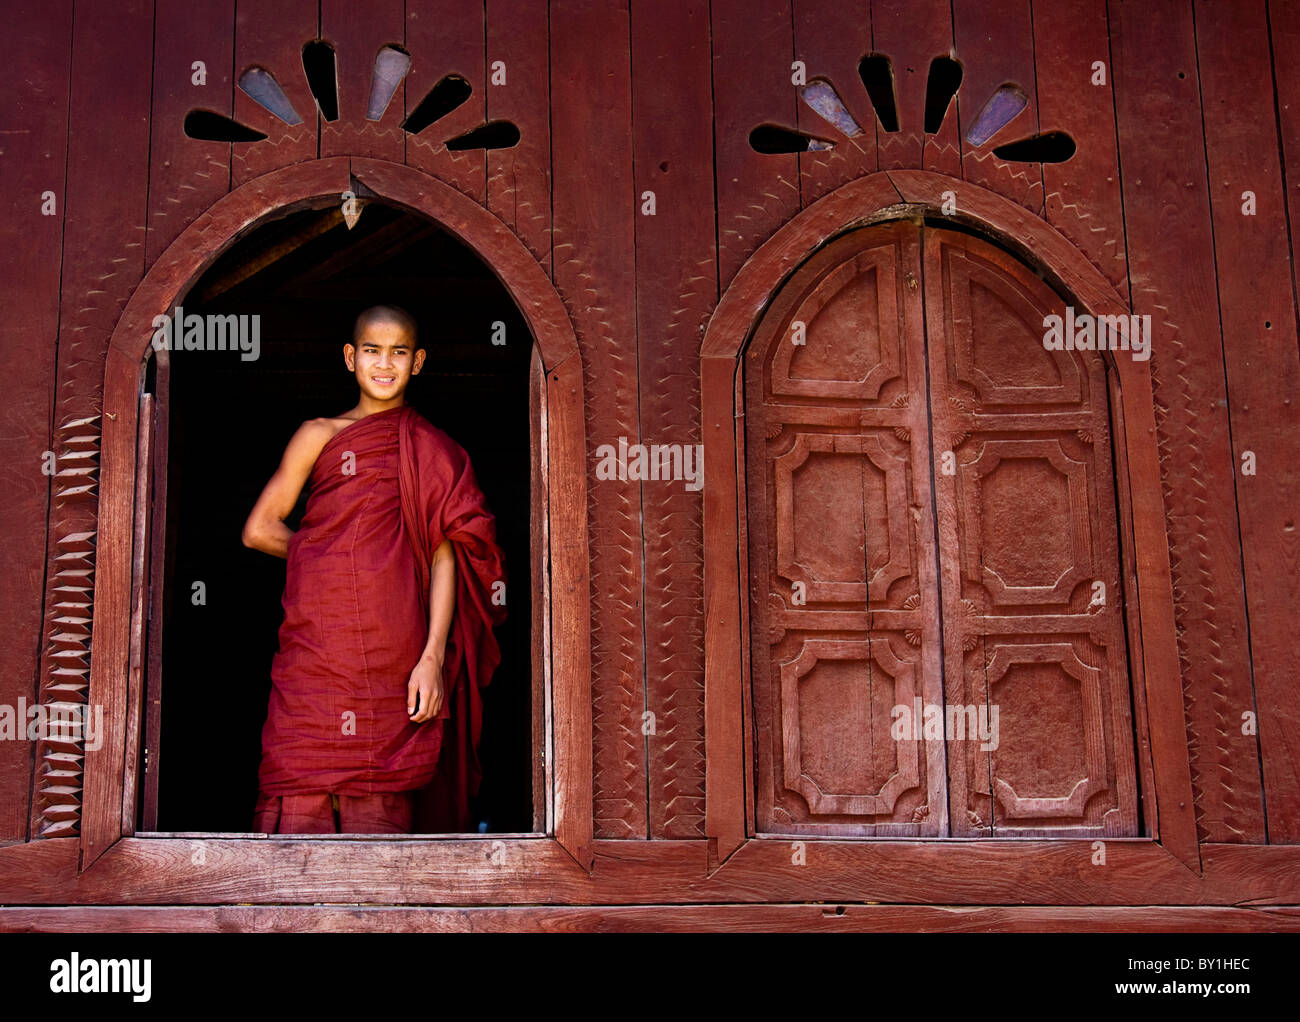 Le Myanmar, Birmanie, Nyaungshwe. Un jeune moine novice debout à une fenêtre en bois, Shwe Yaunghwe Kyaung monastère. Banque D'Images